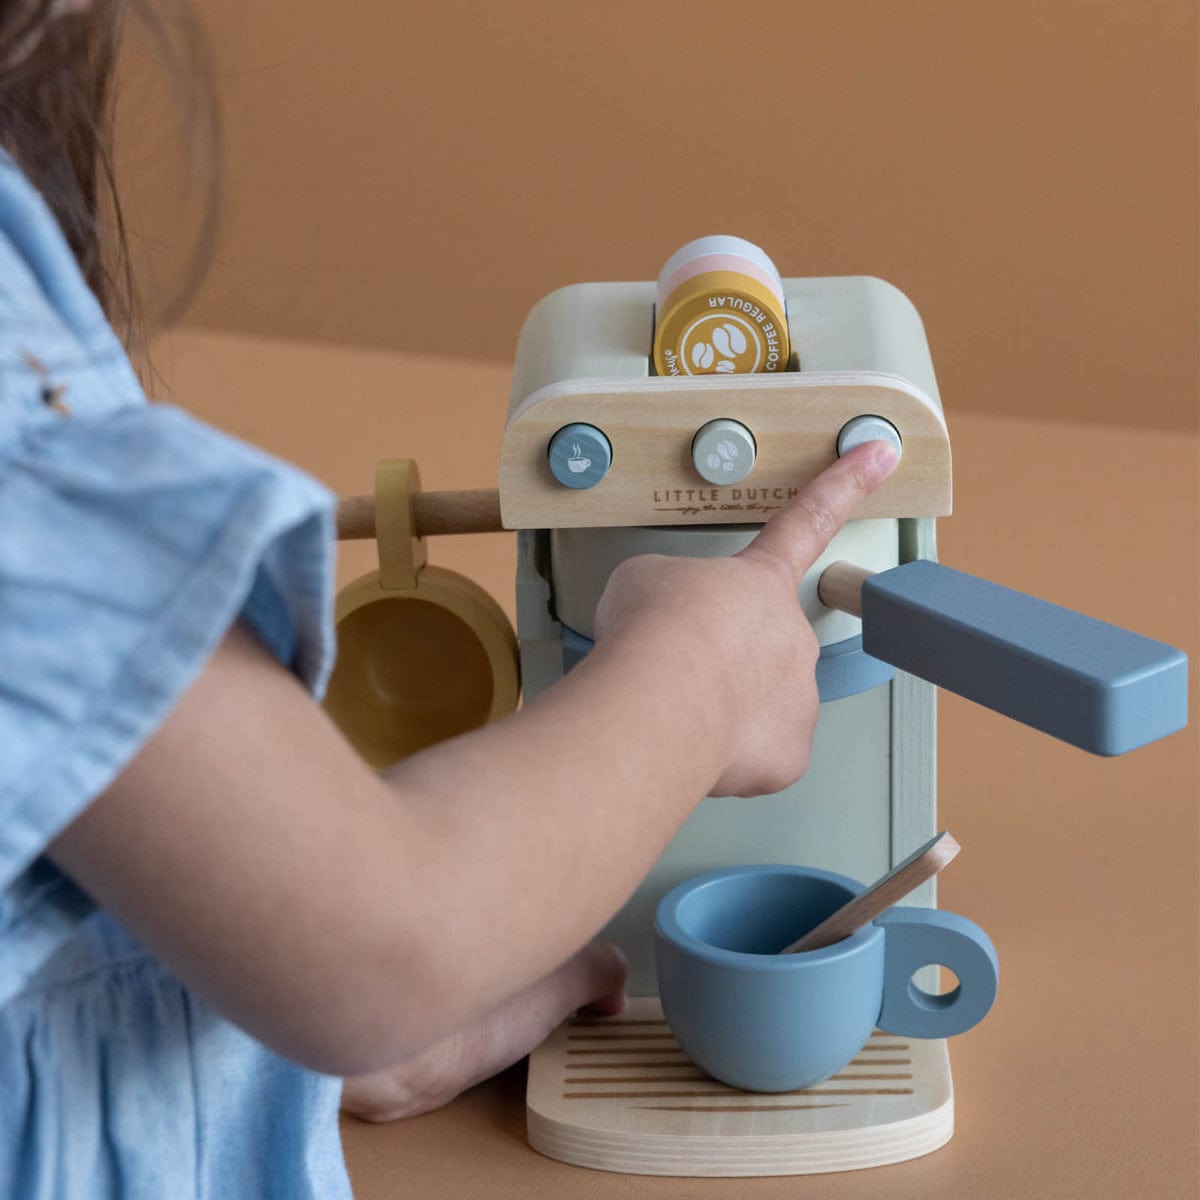 Little Dutch Wooden toy Little Dutch Wooden Coffee Machine Playset